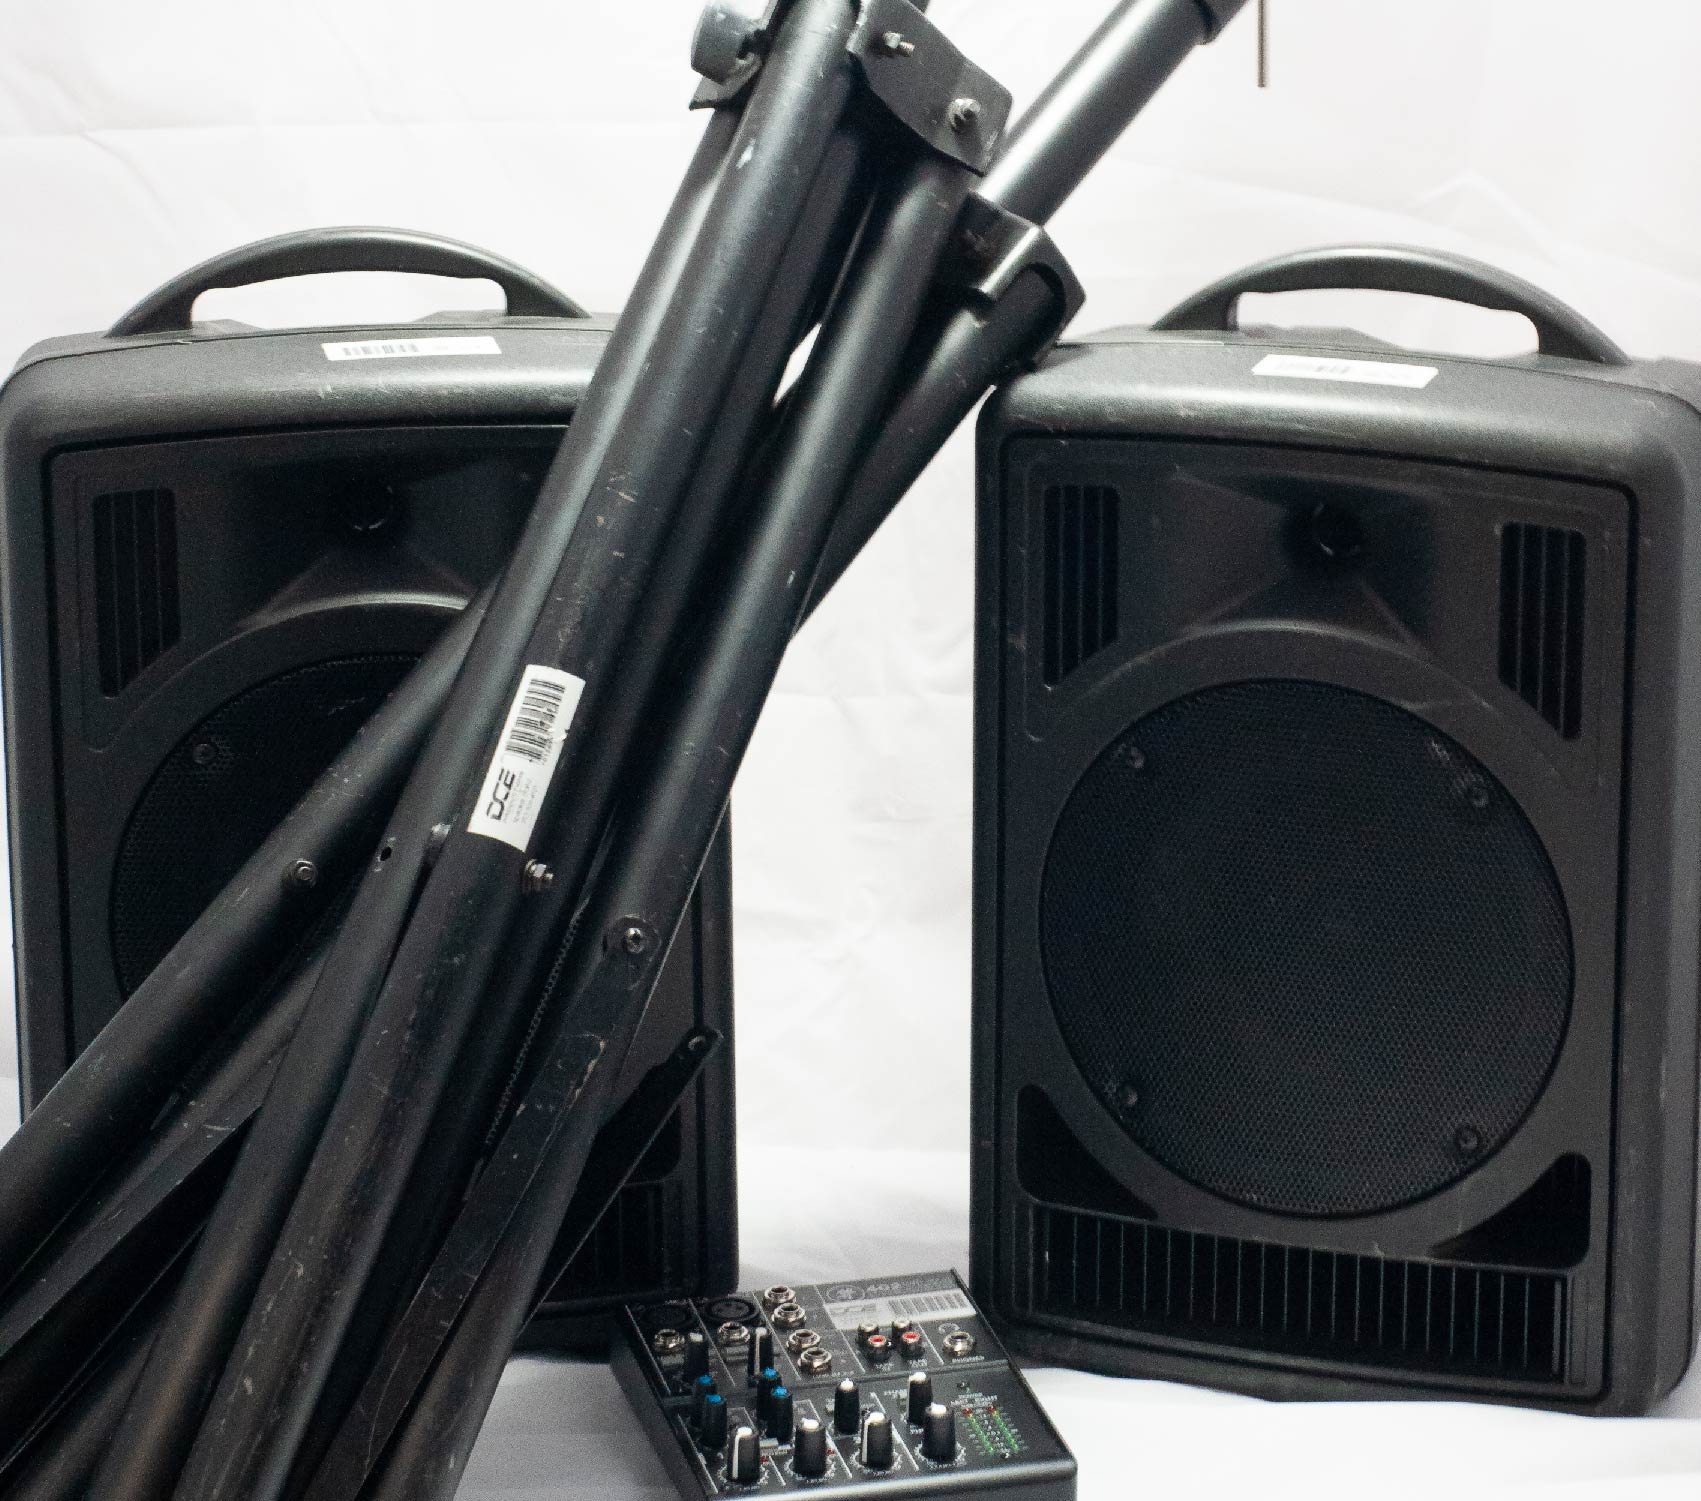 (2) Powered Speakers & Audio Mixer